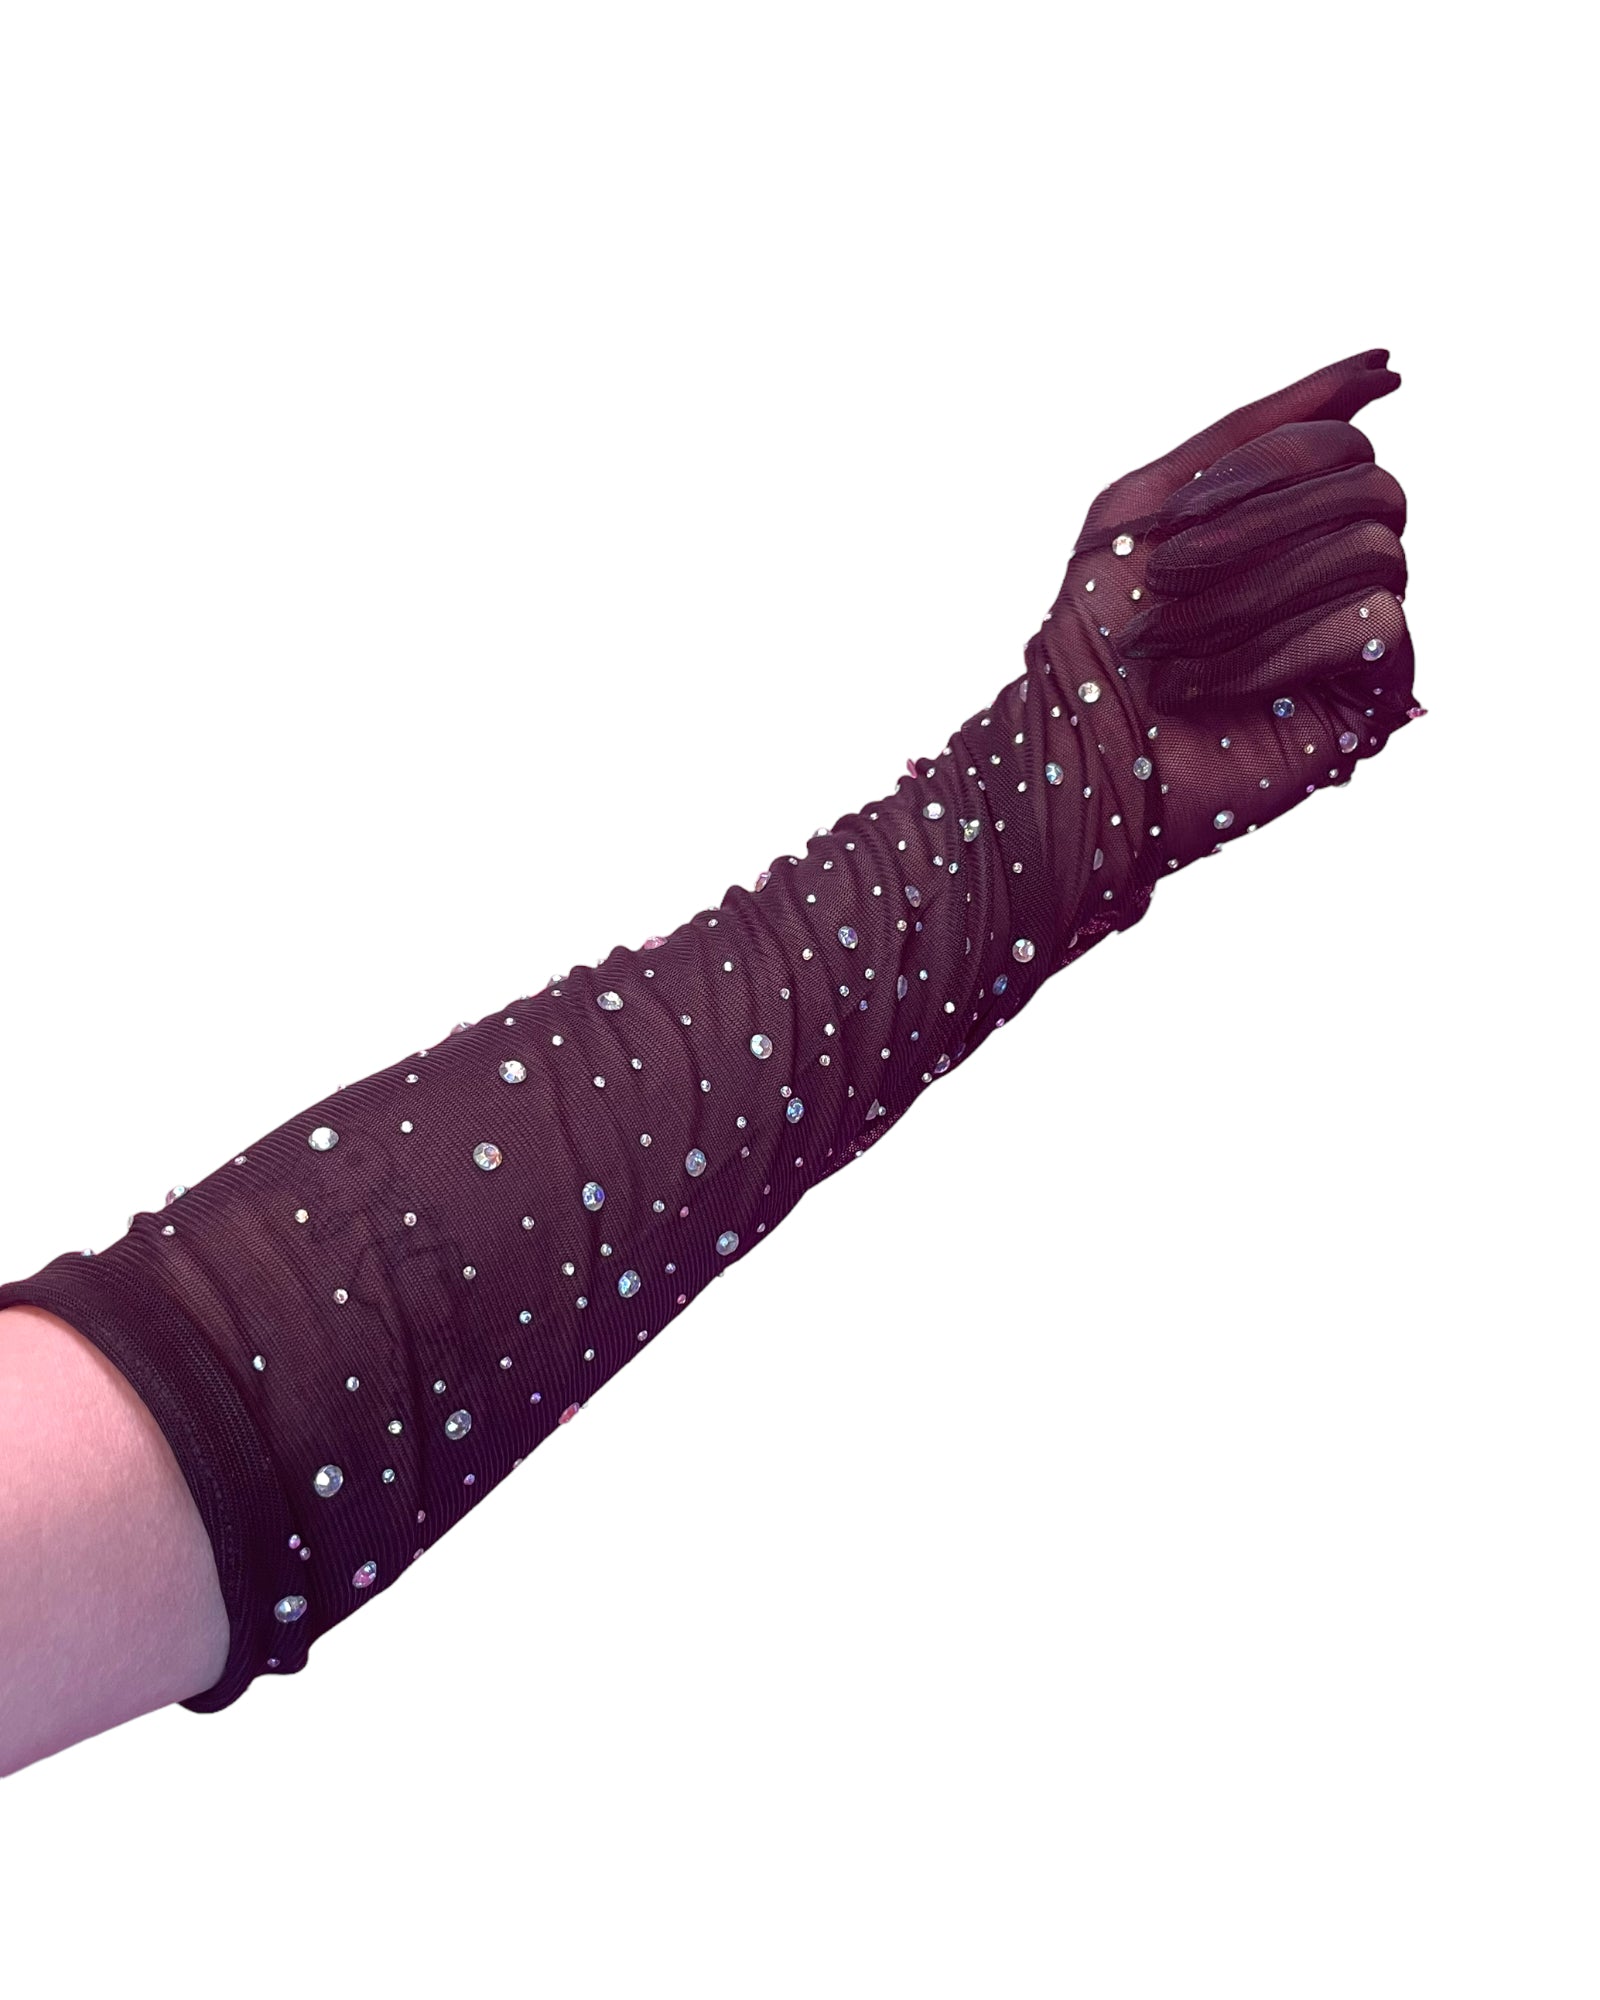 zwarte lange strass handschoenen, clubwear